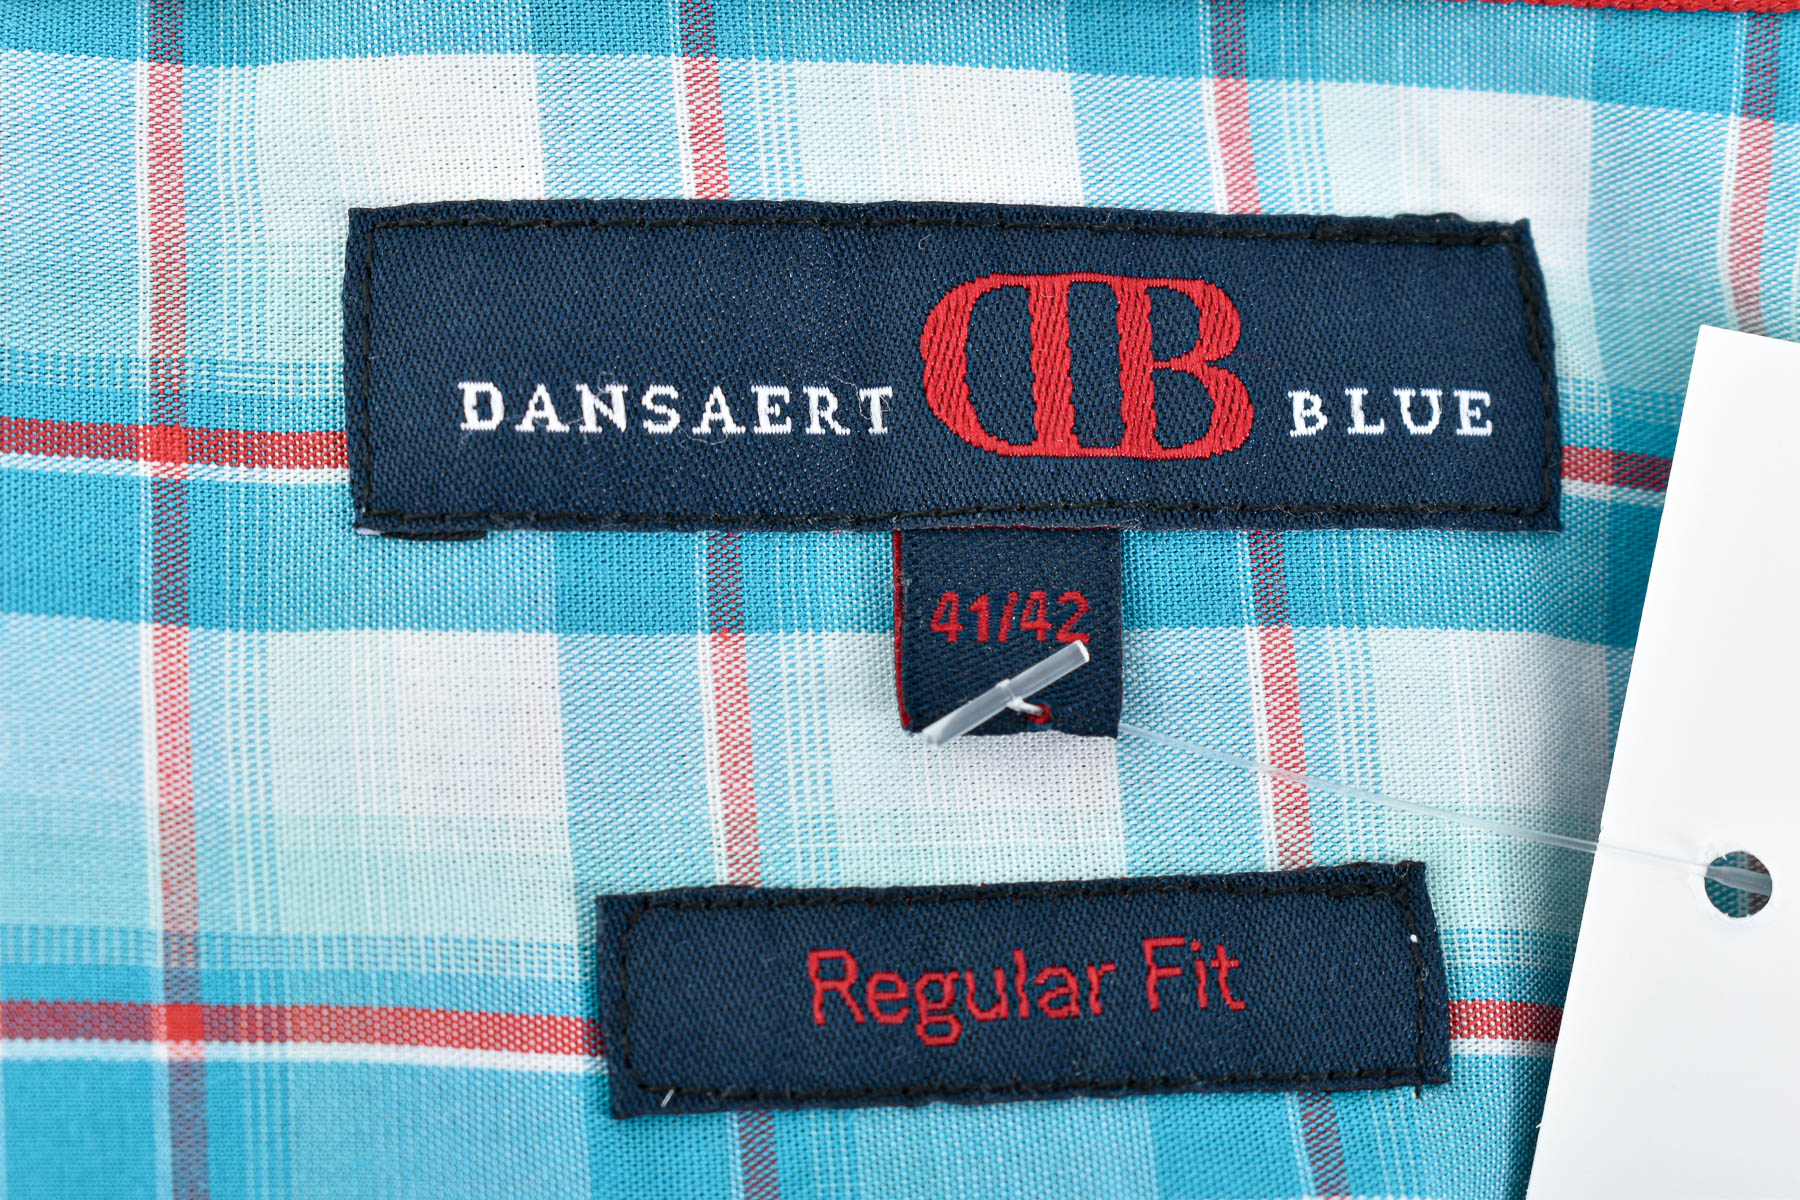 Men's shirt - DANSAERT BLUE - 2